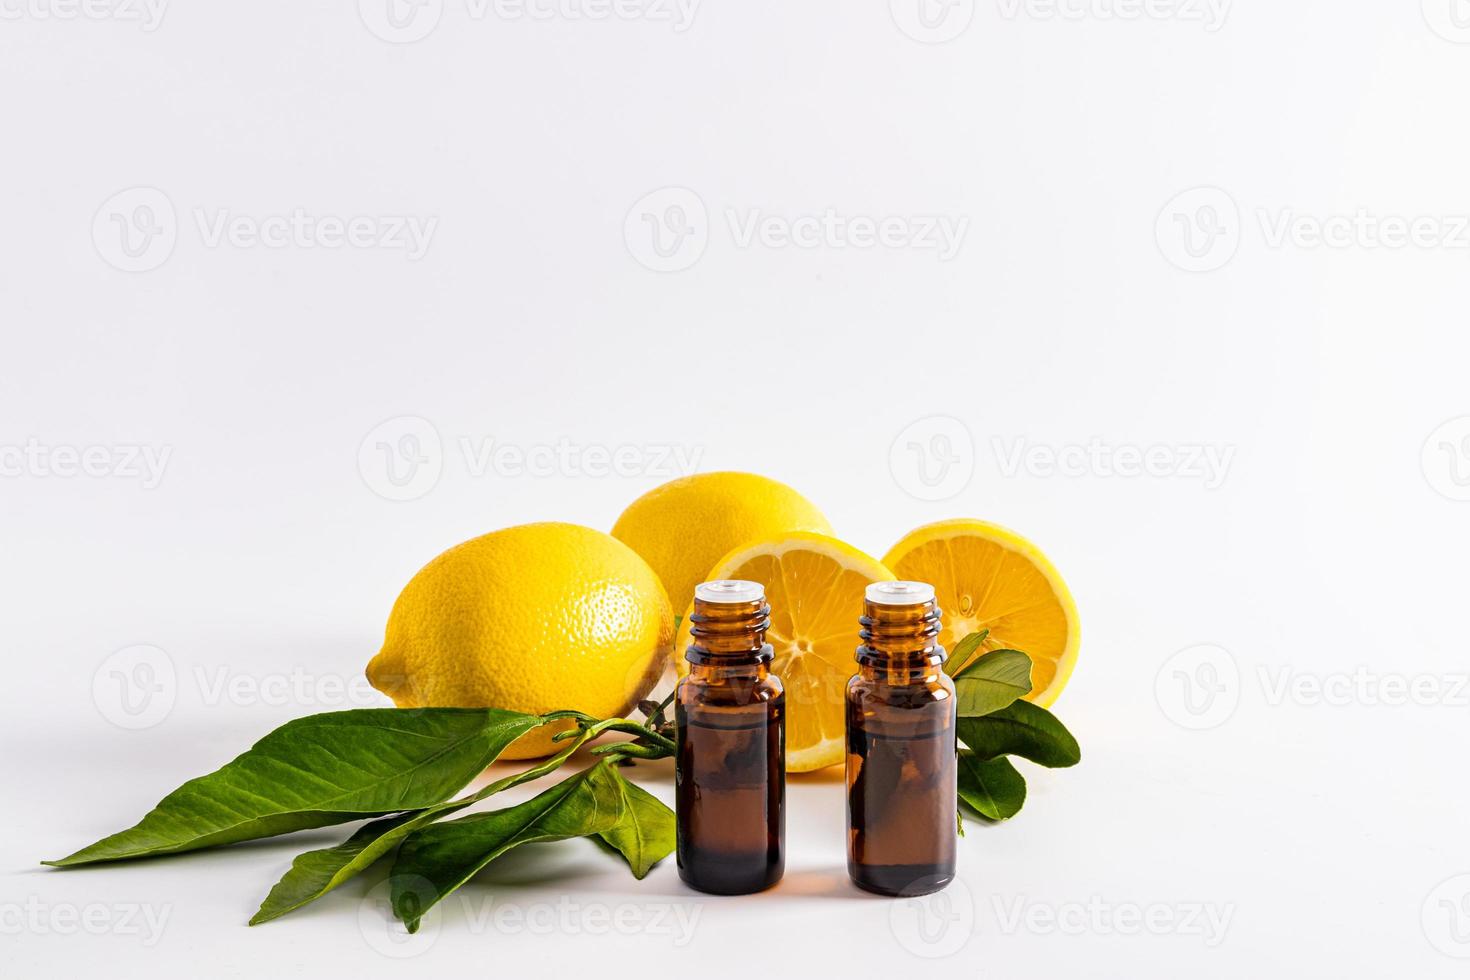 voorkant visie van twee medisch flessen met citroen essentieel olie tegenover rijp vruchten. wit achtergrond. een blanco lay-out voor de Product presentatie. foto